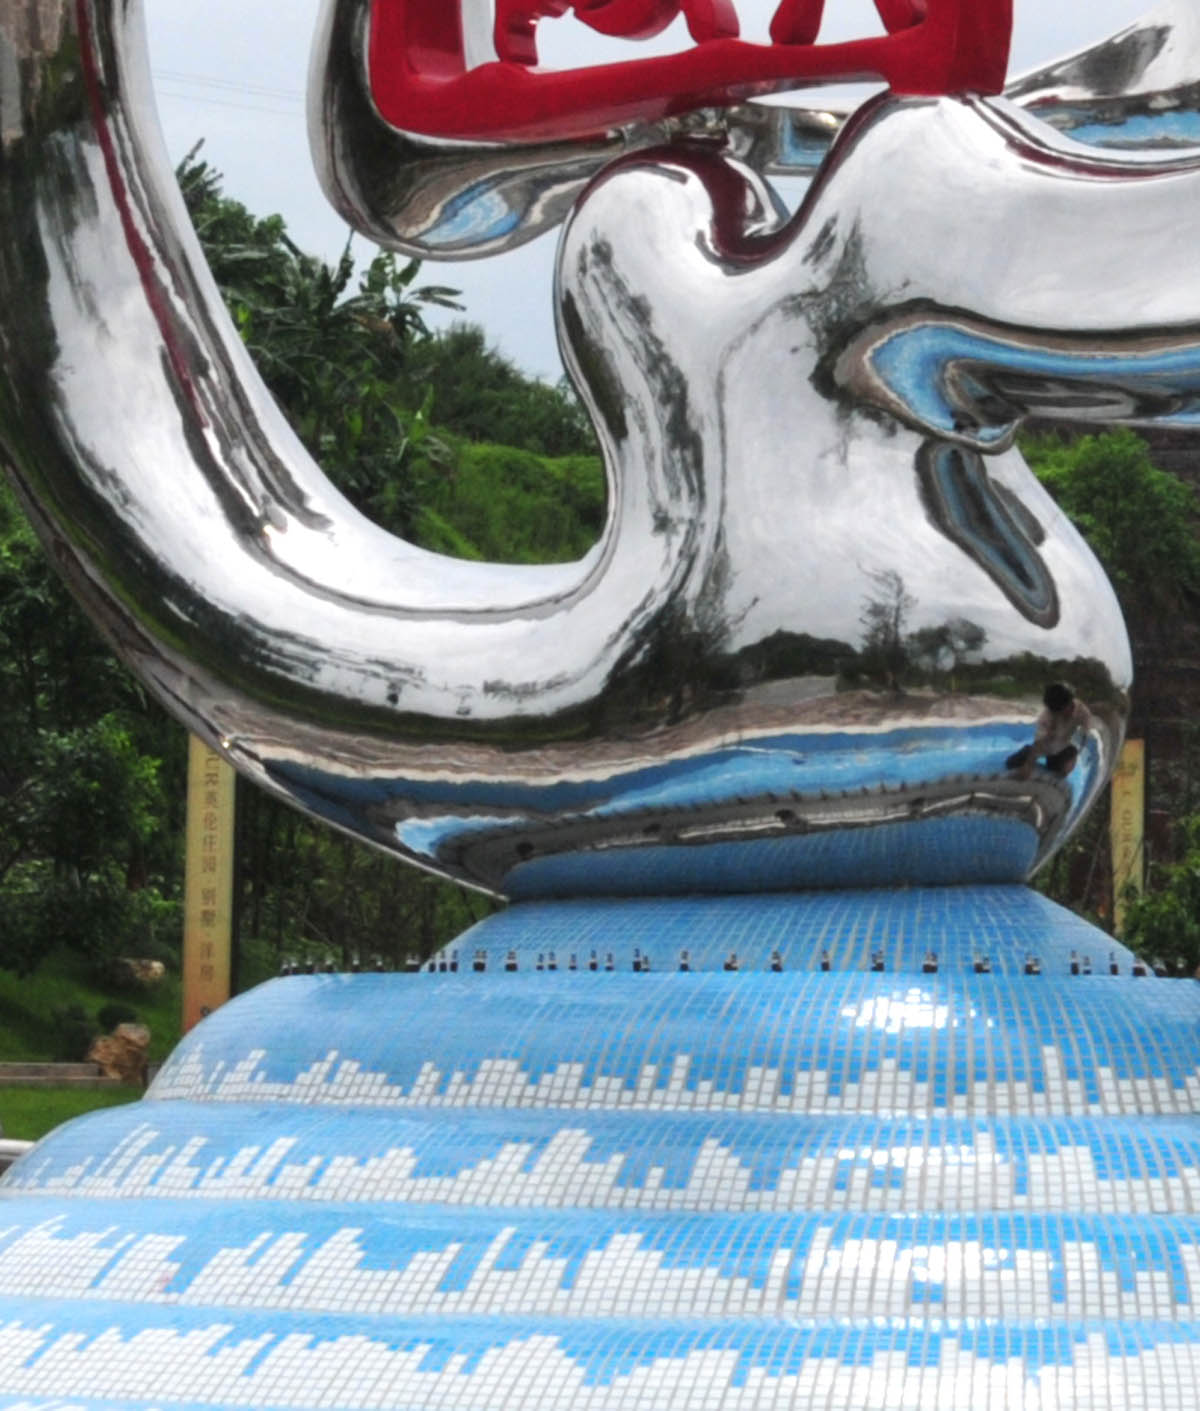 四川沿滩新城主标志性雕塑《腾龙欲飞》